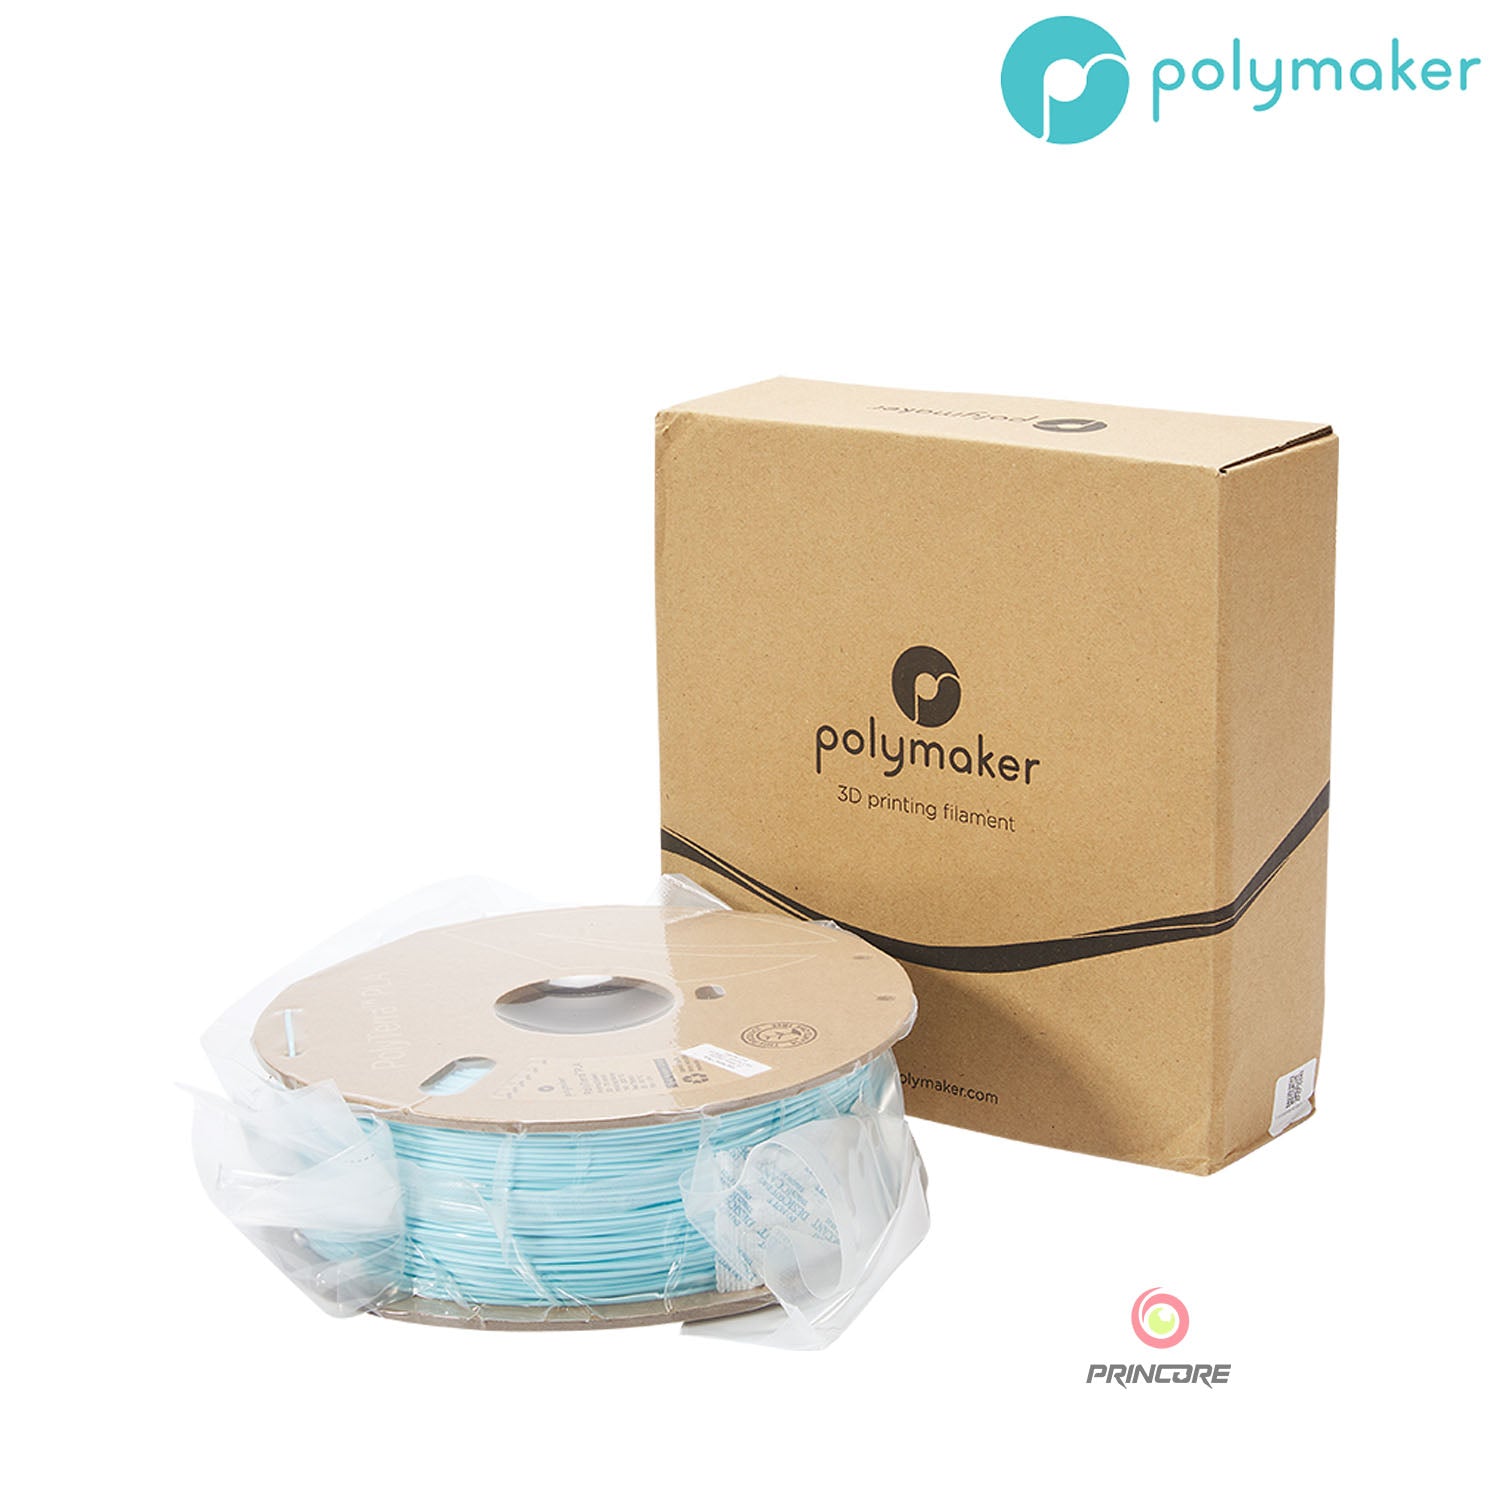 Polymaker PolyTerra™ PLA - Ice [1.75mm] (19,90€/Kg)